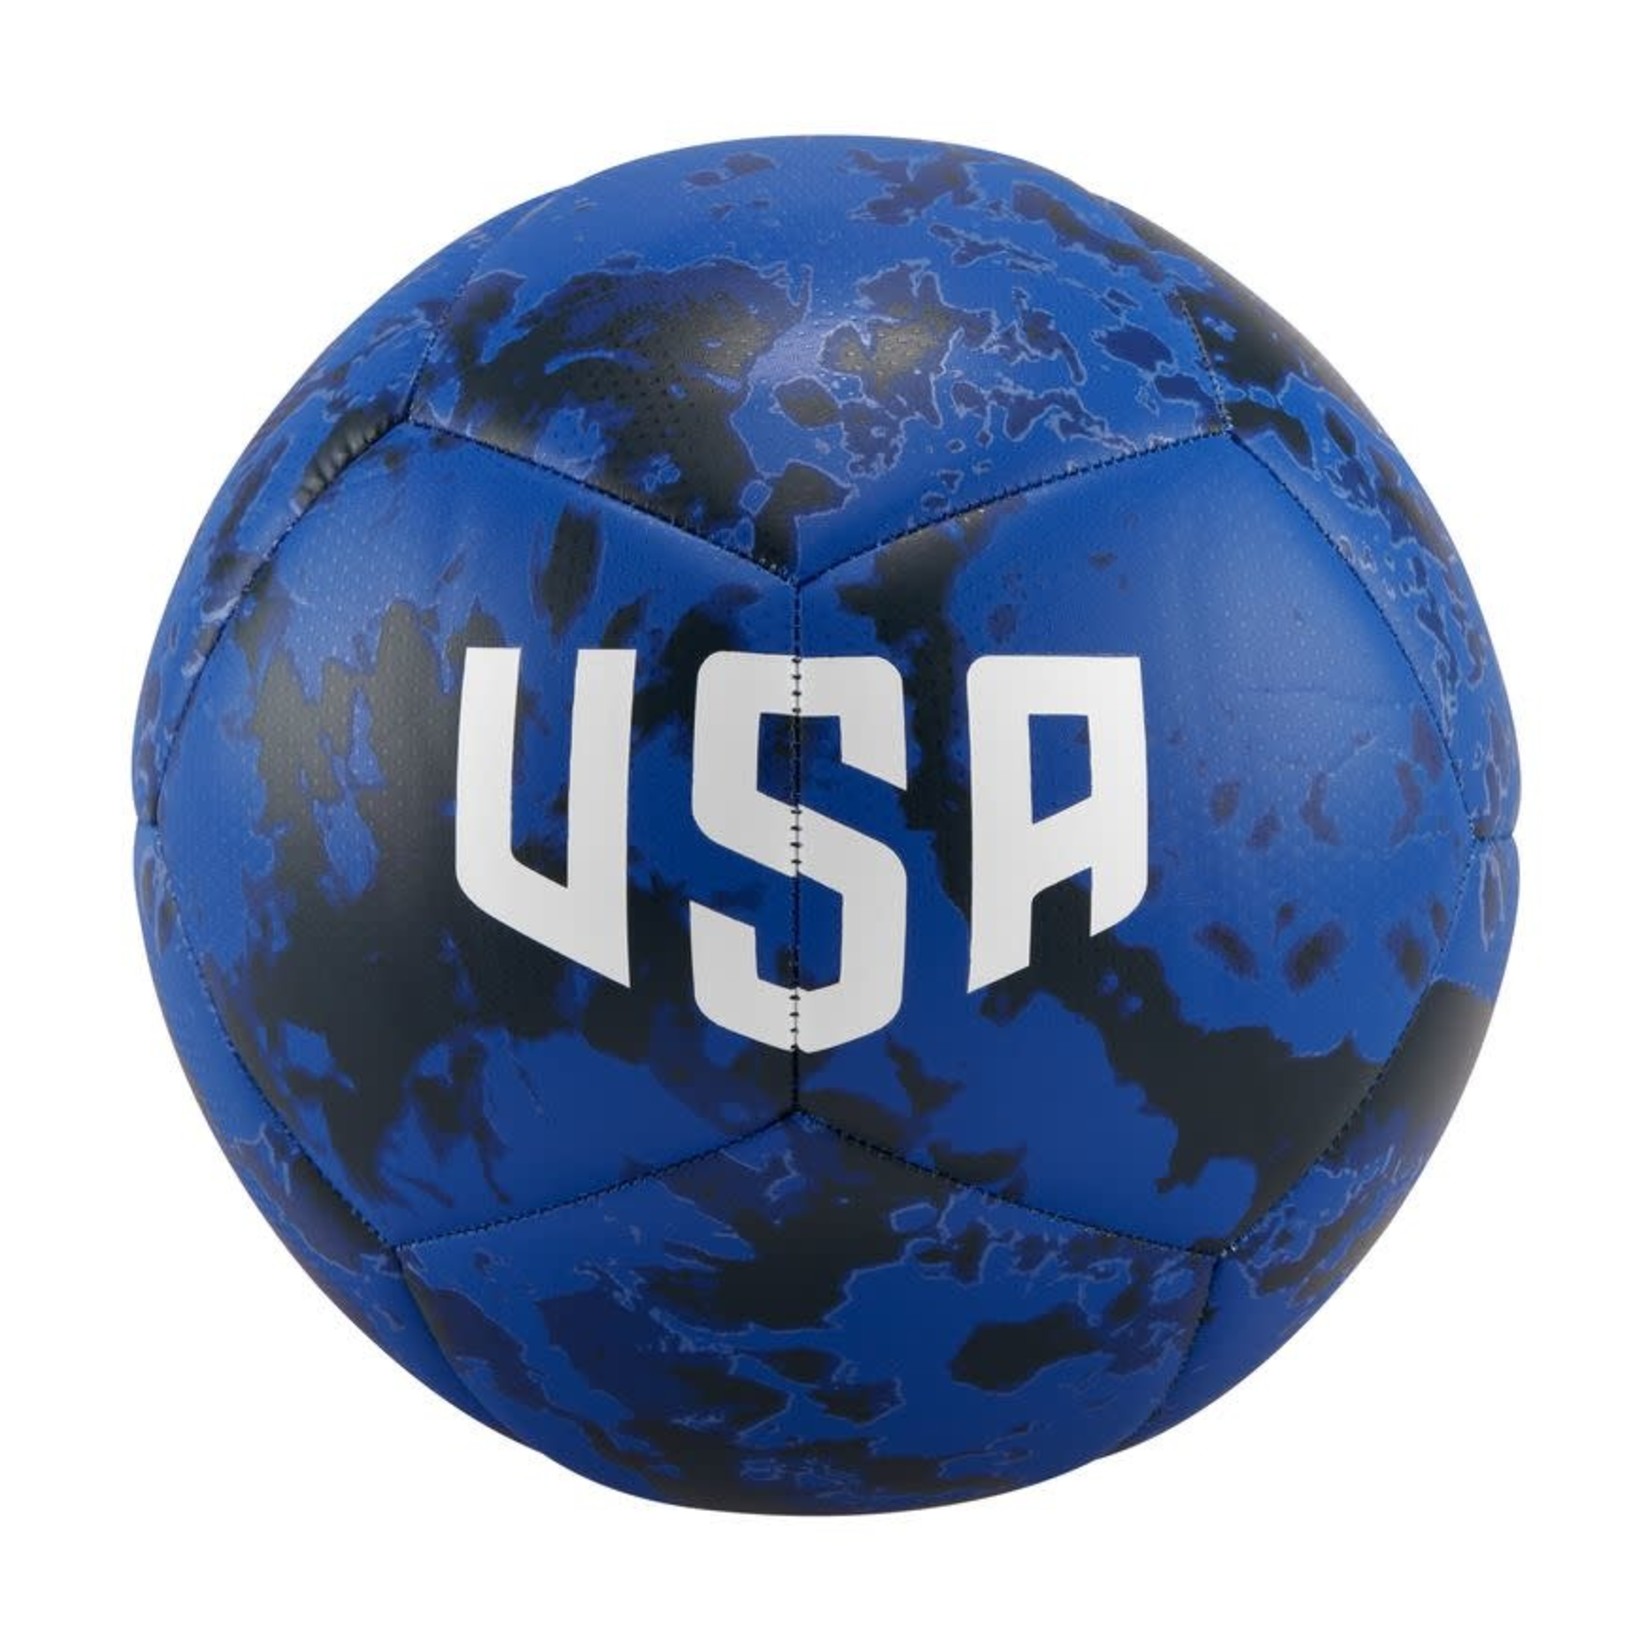 NIKE USA 2022 PITCH BALL (BLUE)